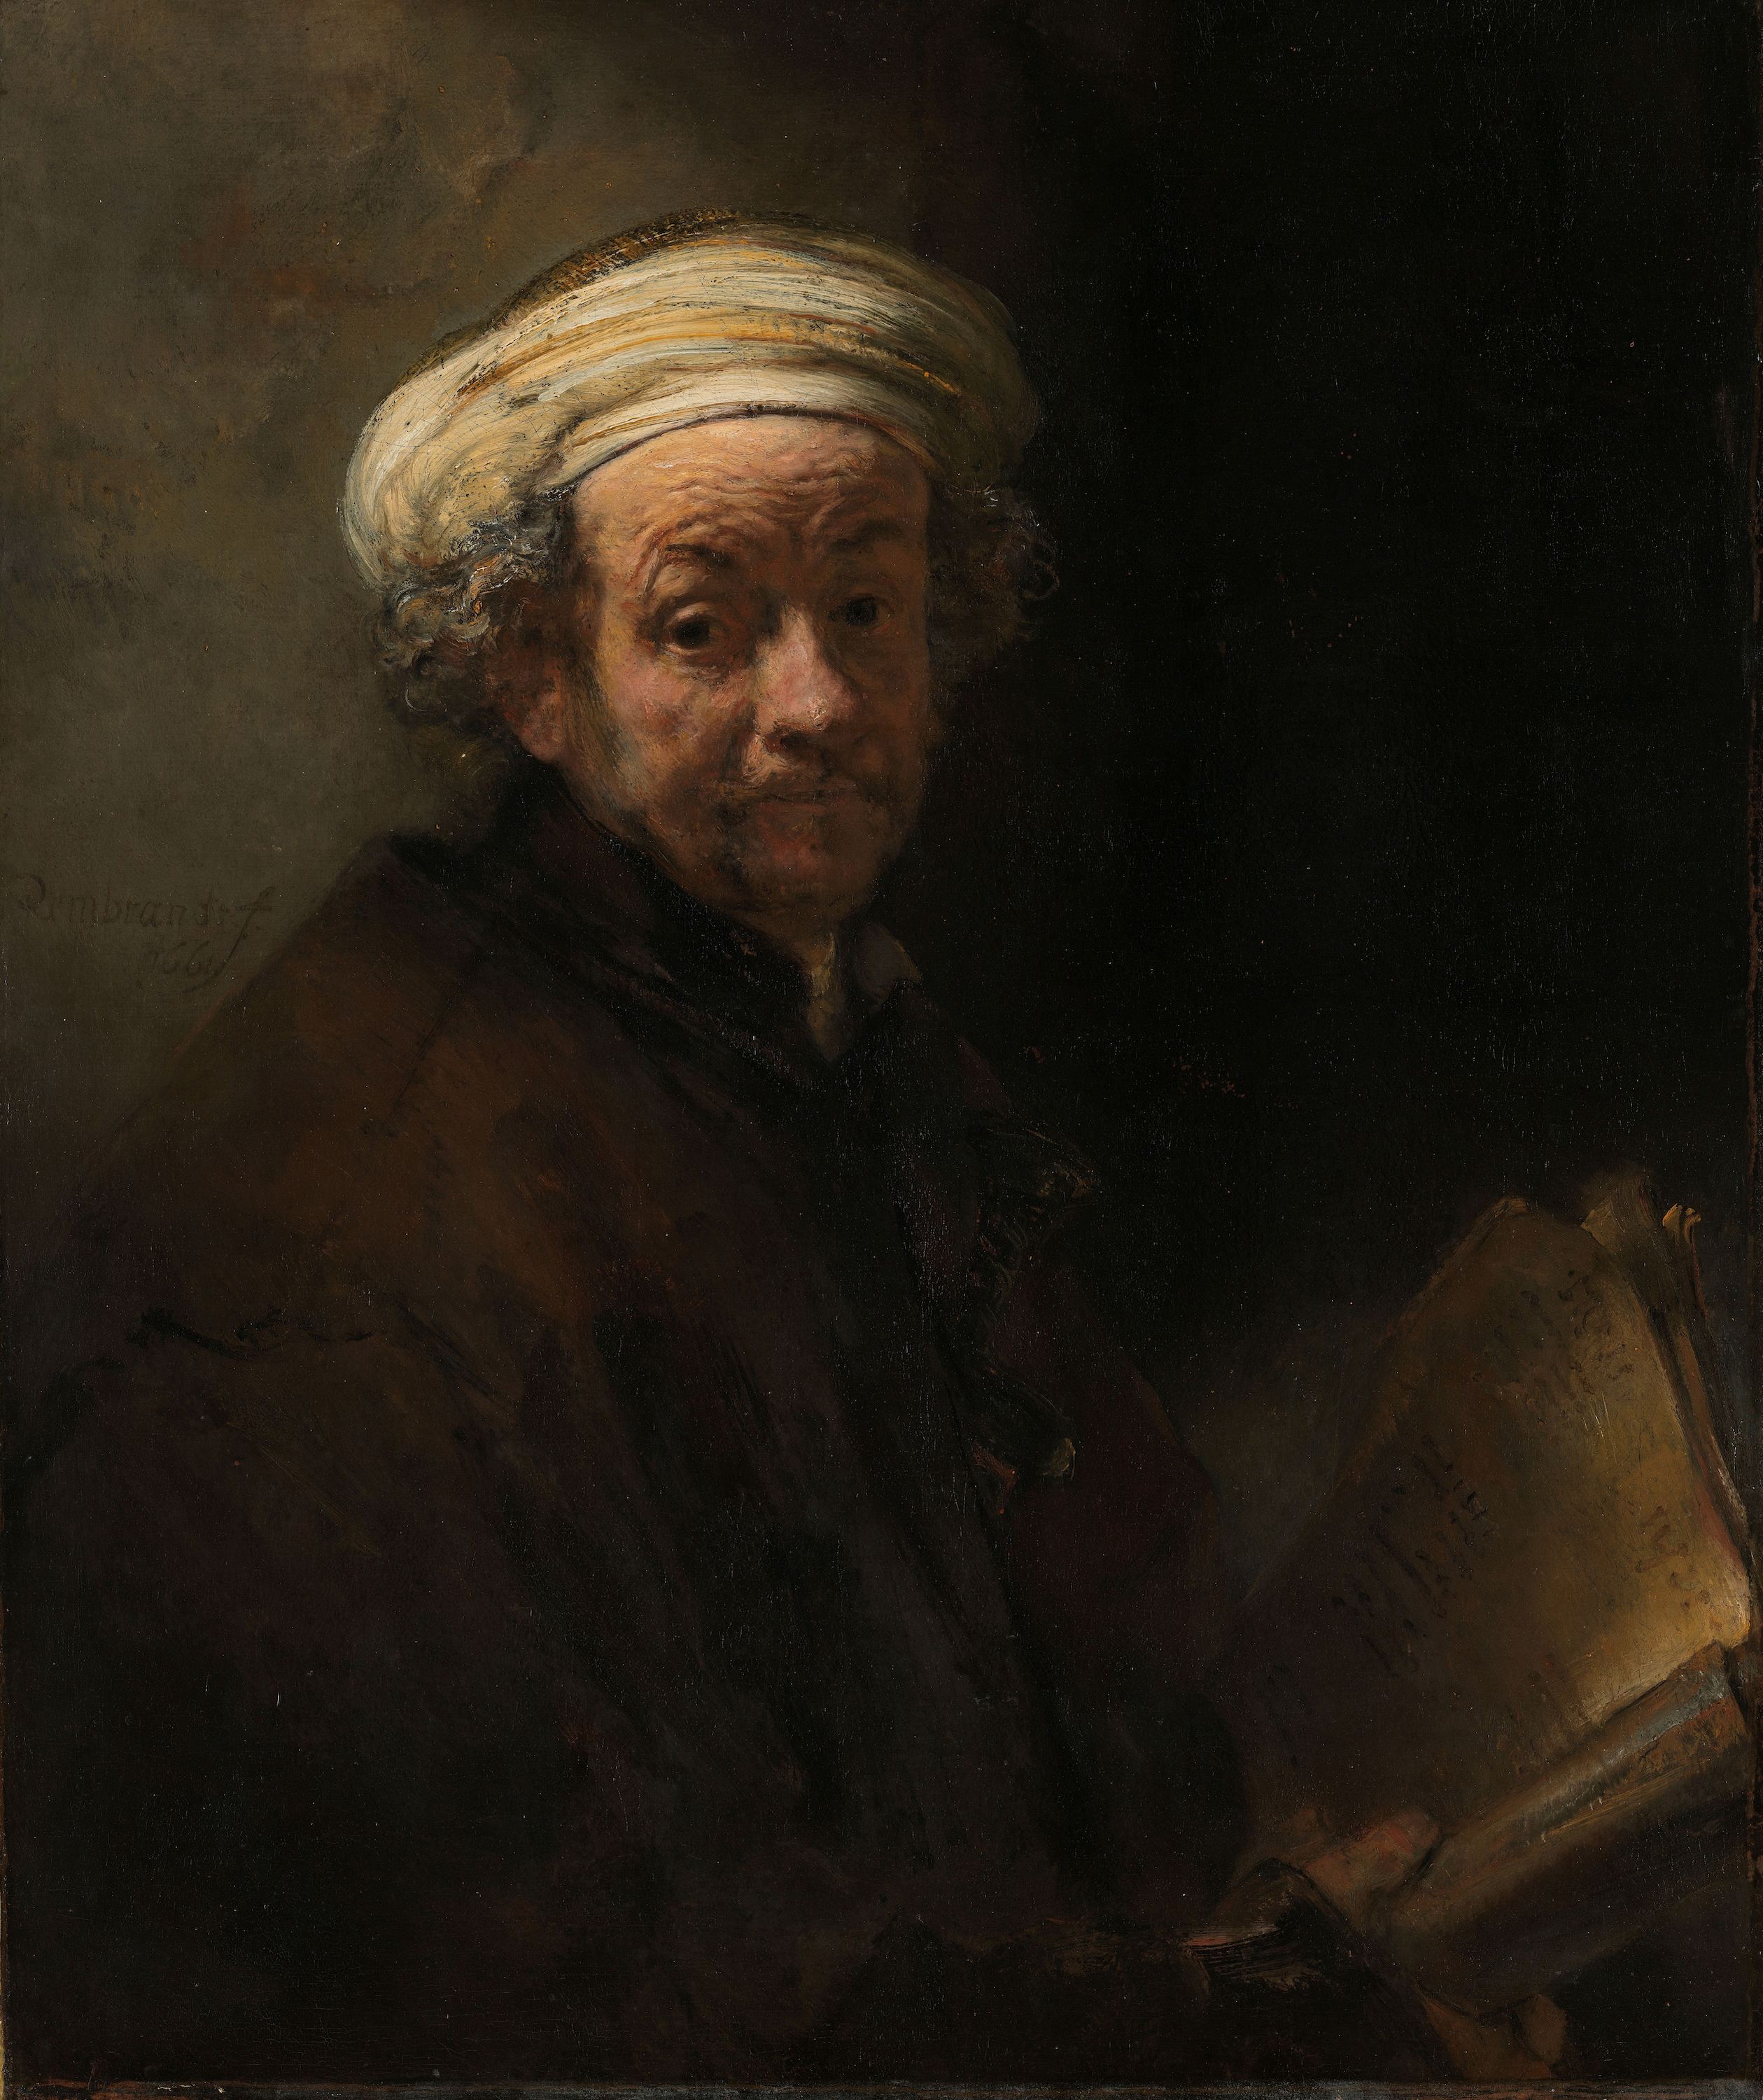 Autoportrait en Apôtre Paul by Rembrandt van Rijn - 1661 - 91 × 77 cm 